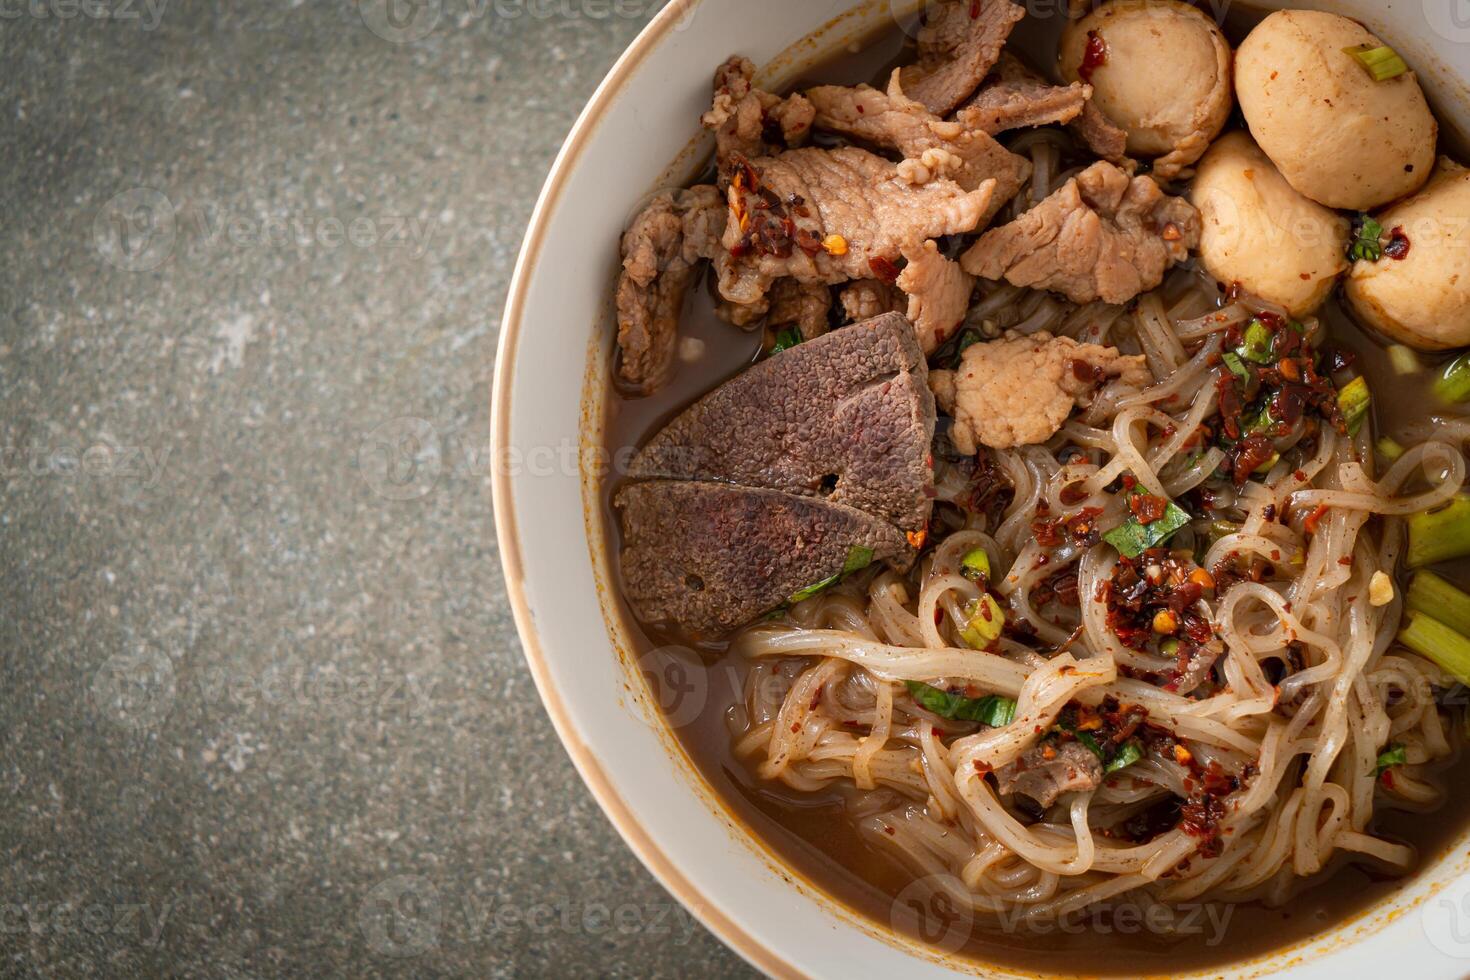 nouilles thaï au porc, ragoût de porc, boulette de viande et foie de porc dans une soupe de sang photo